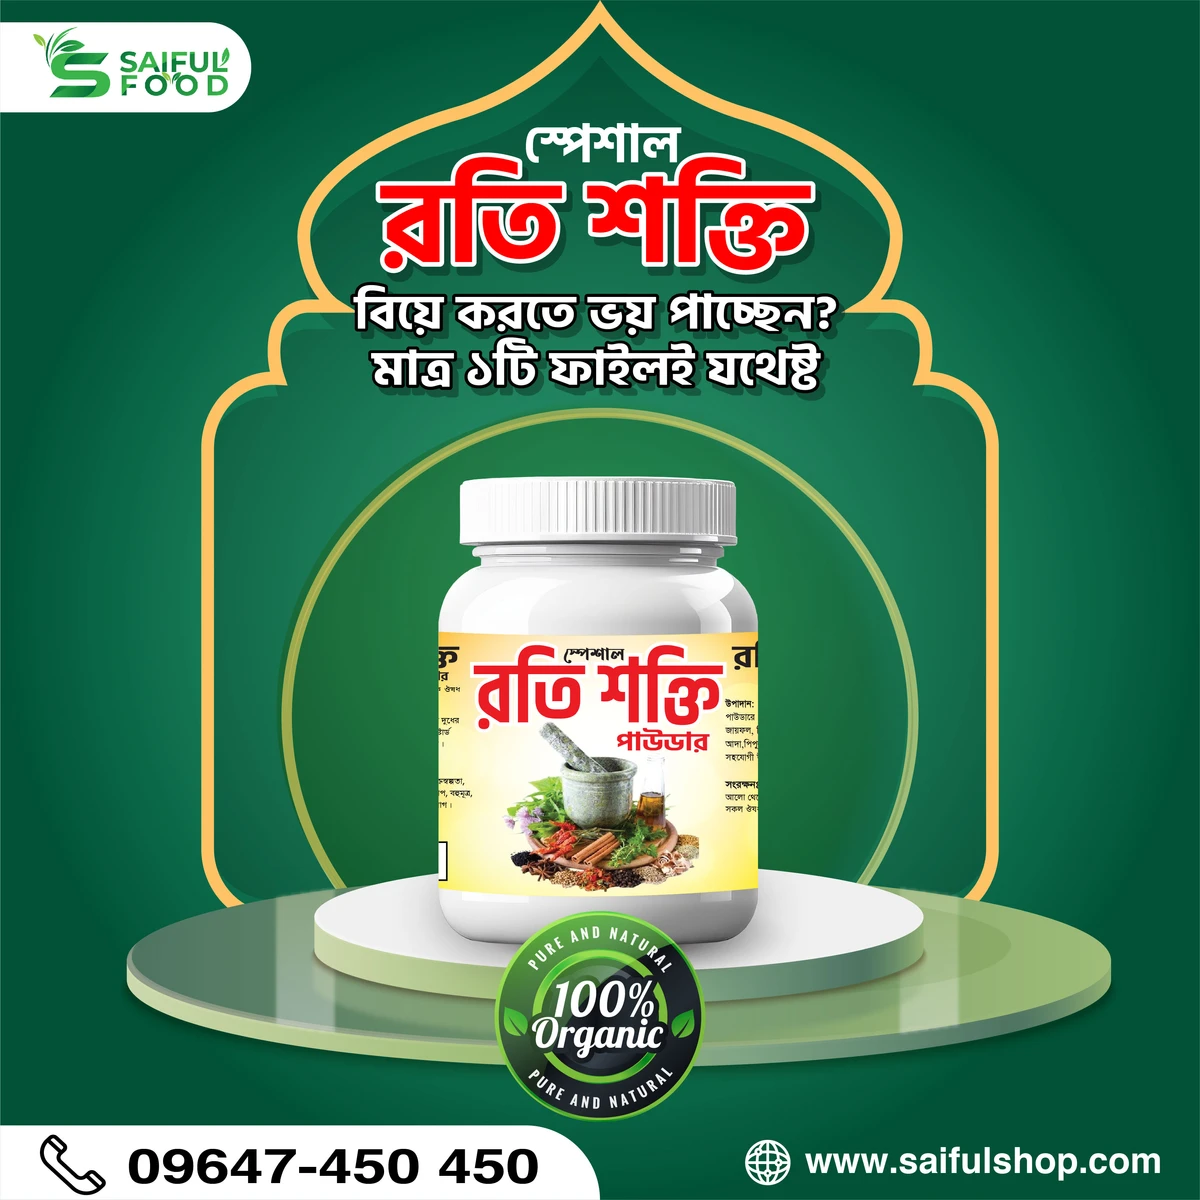 স্পেশাল রতি শক্তি পাউডার || Special Roti Shakti Powder || Organic Powder for Erectile Disfunction || Premature Ejaculation